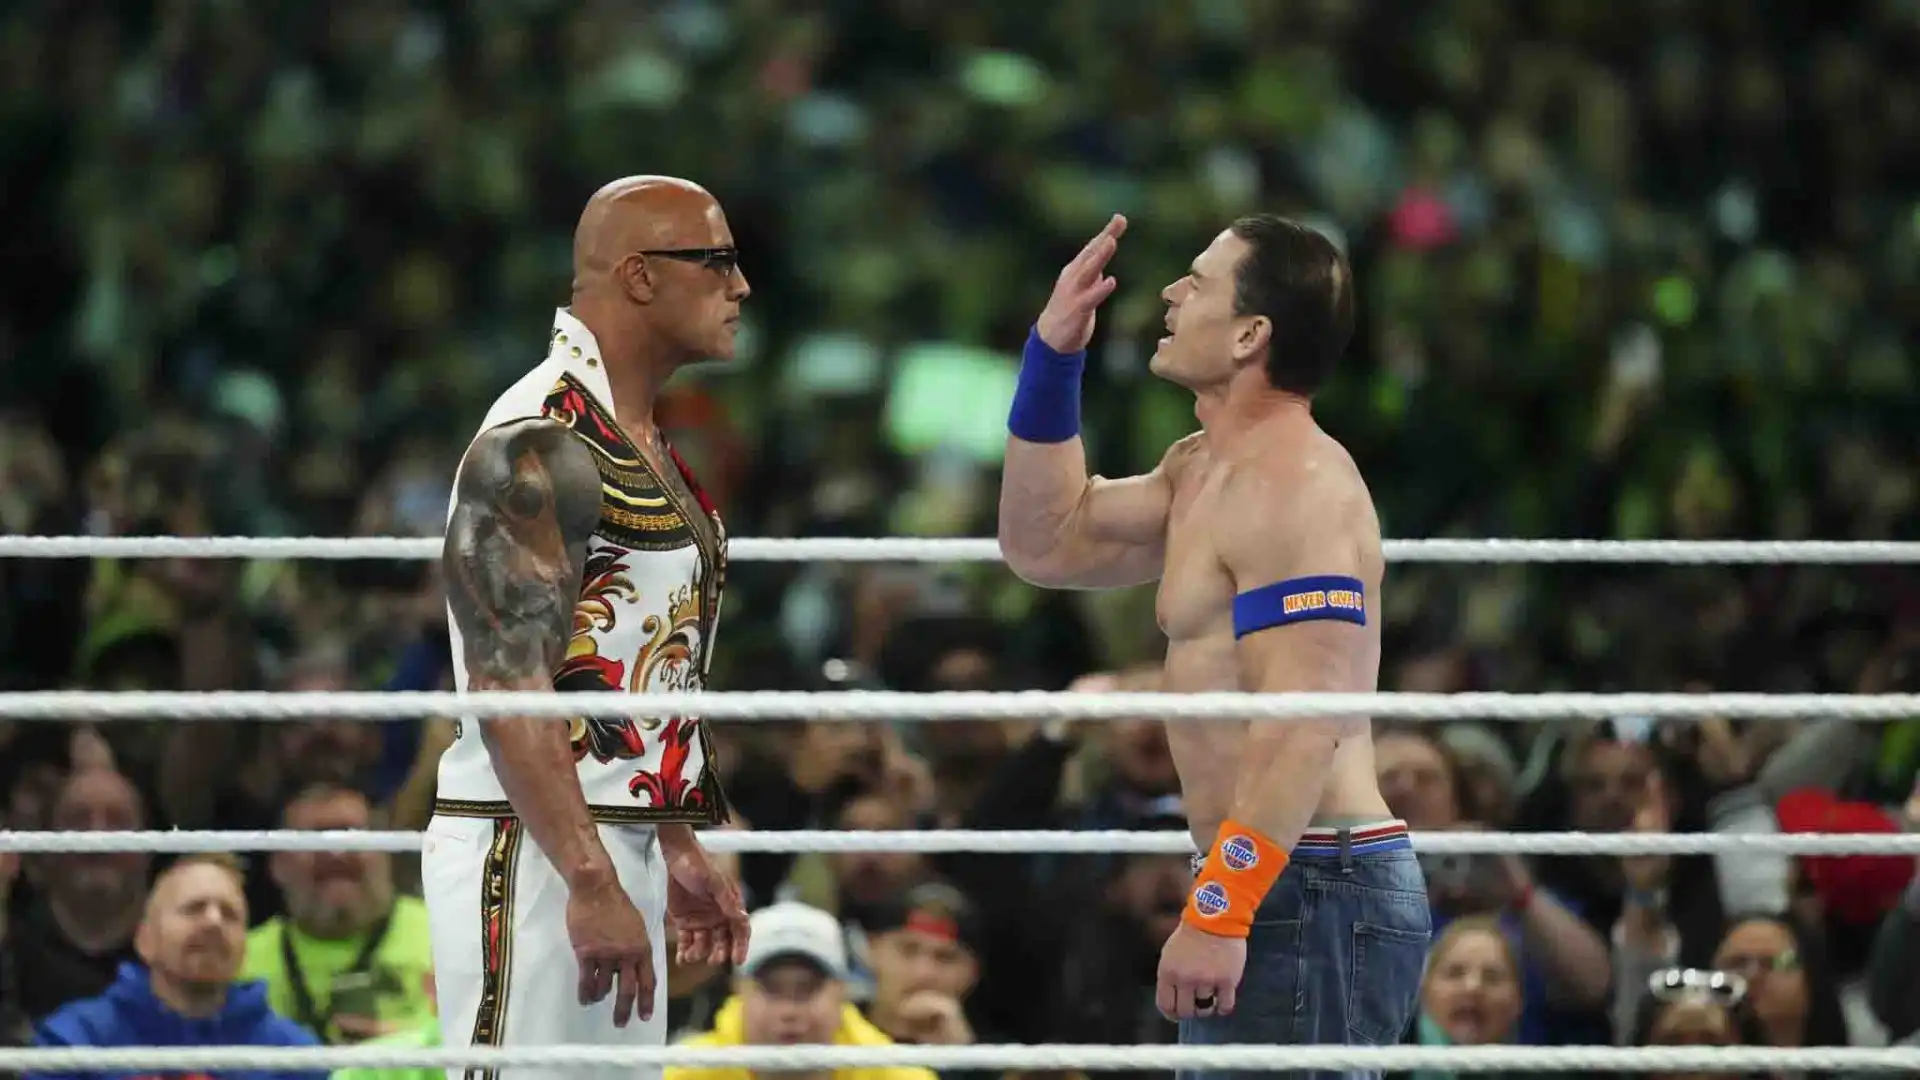 The Rock però è intervenuto per stendere John Cena.